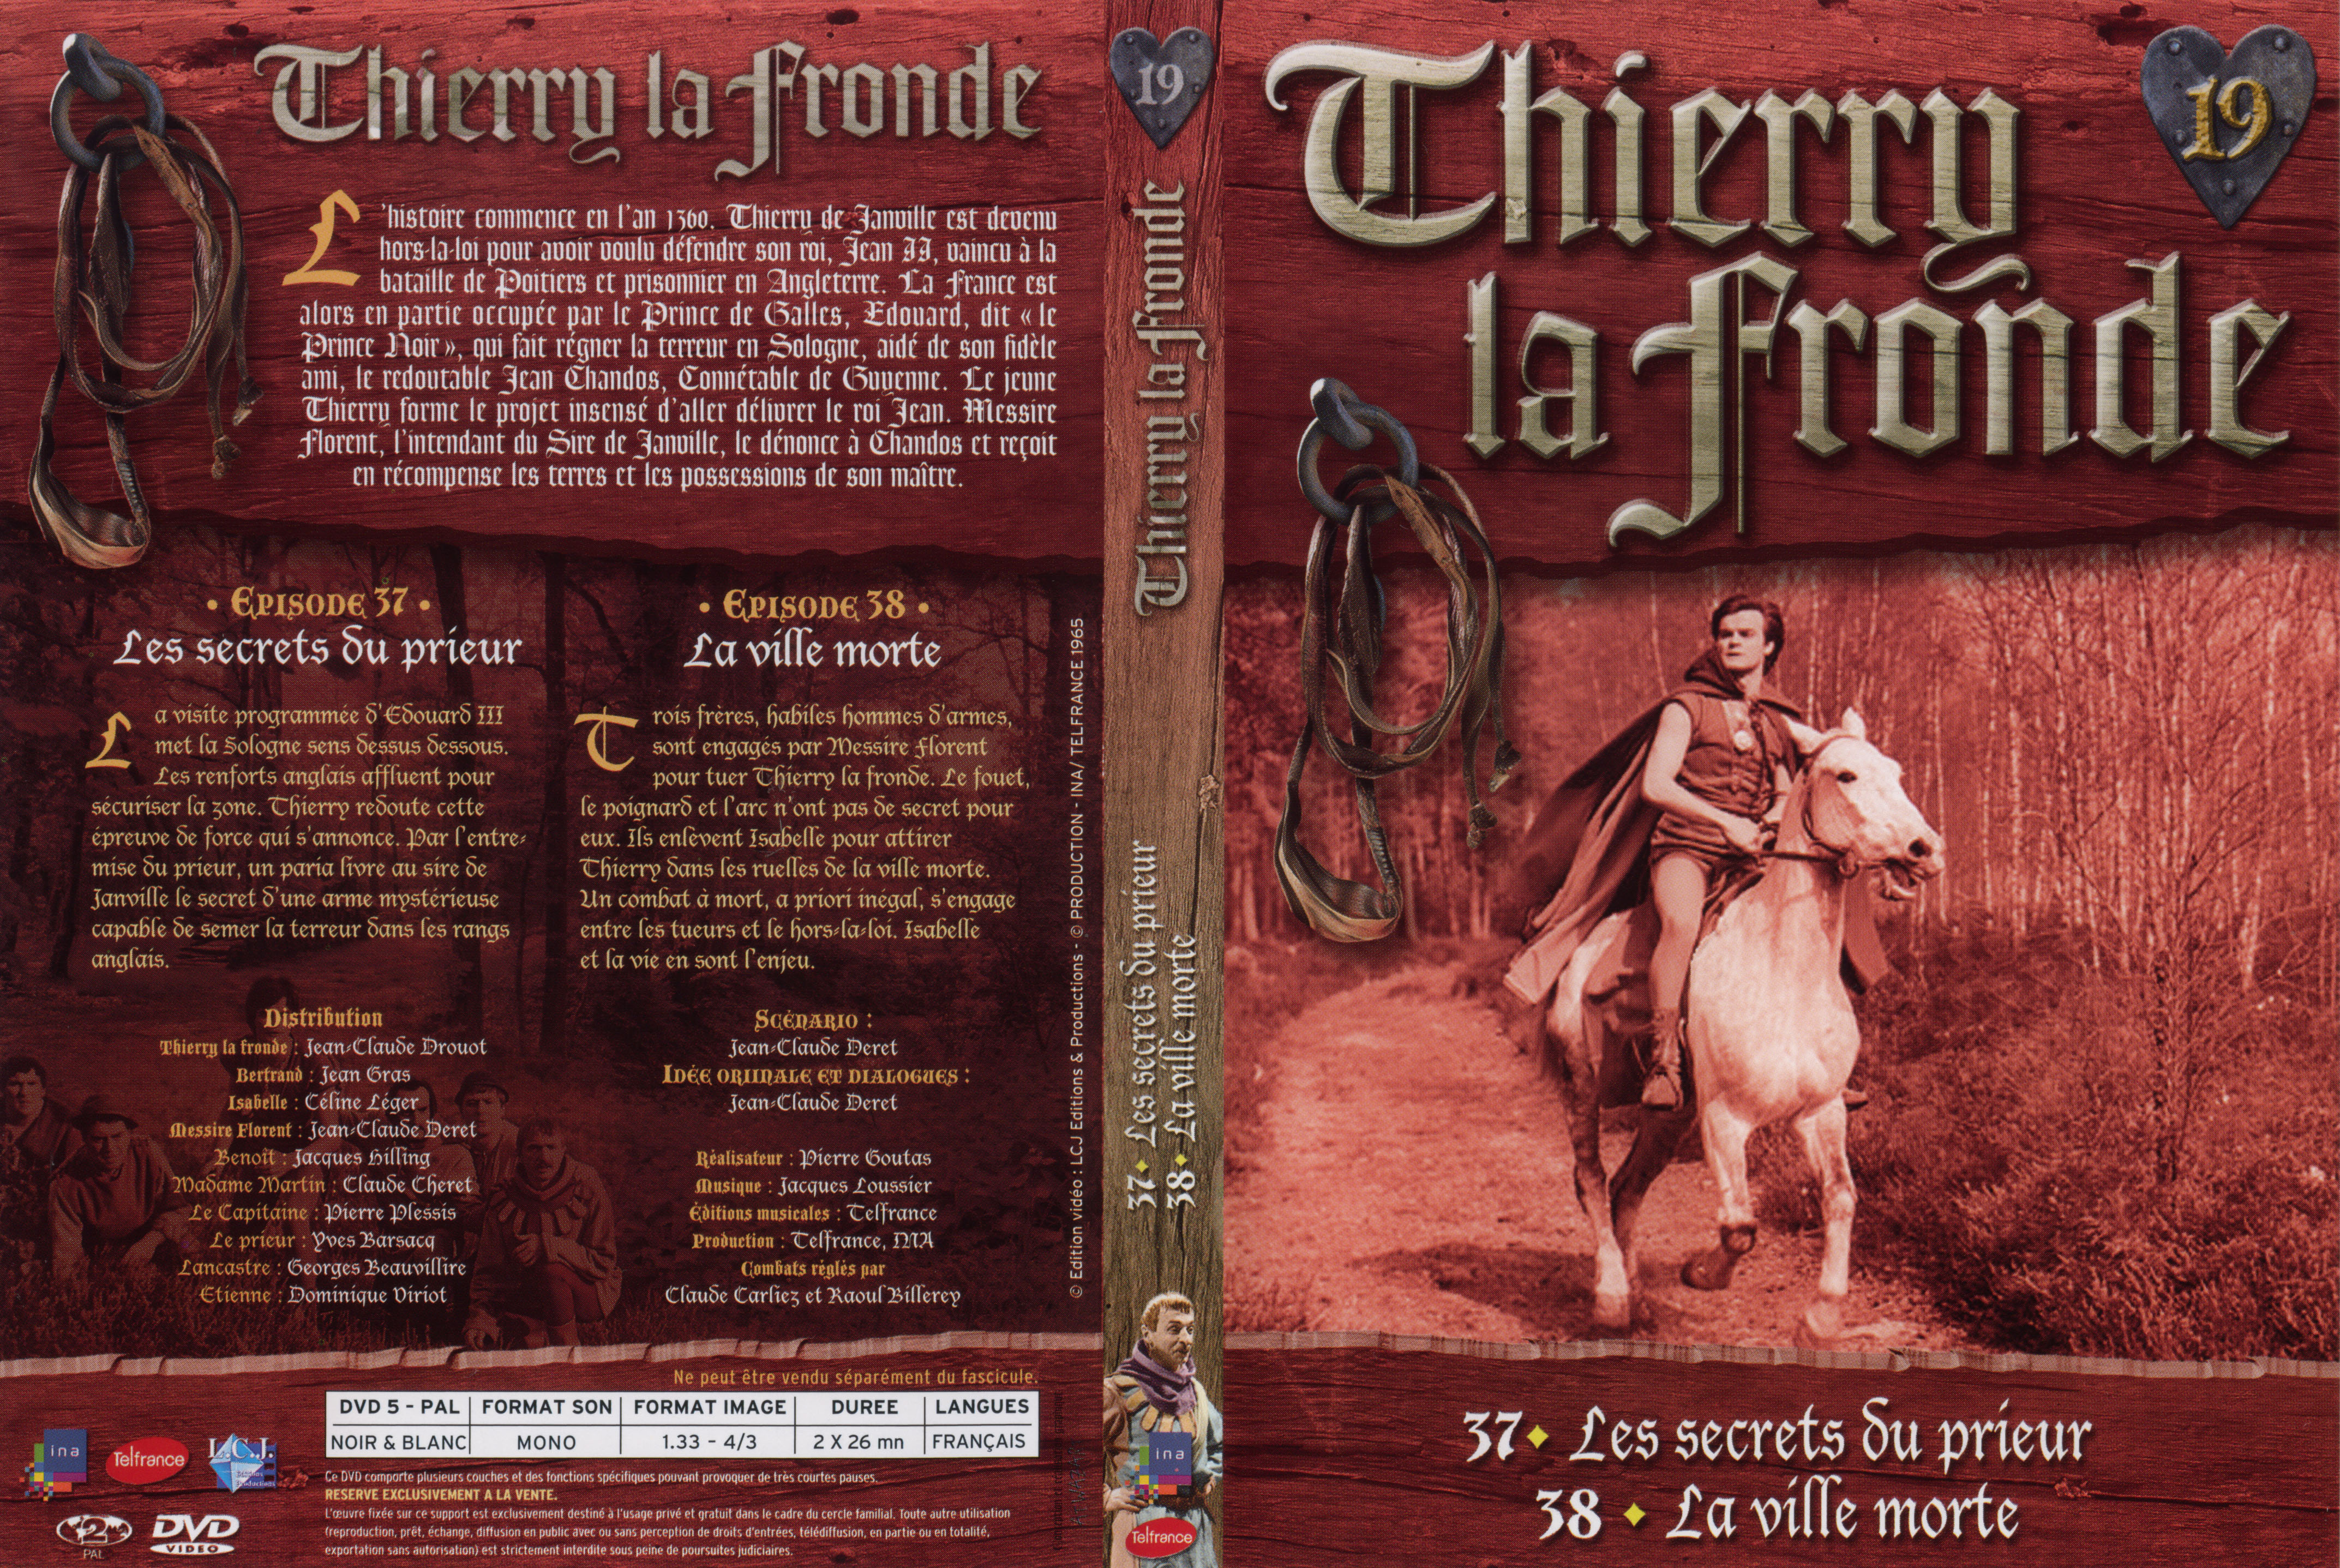 Jaquette DVD Thierry la Fronde vol 19